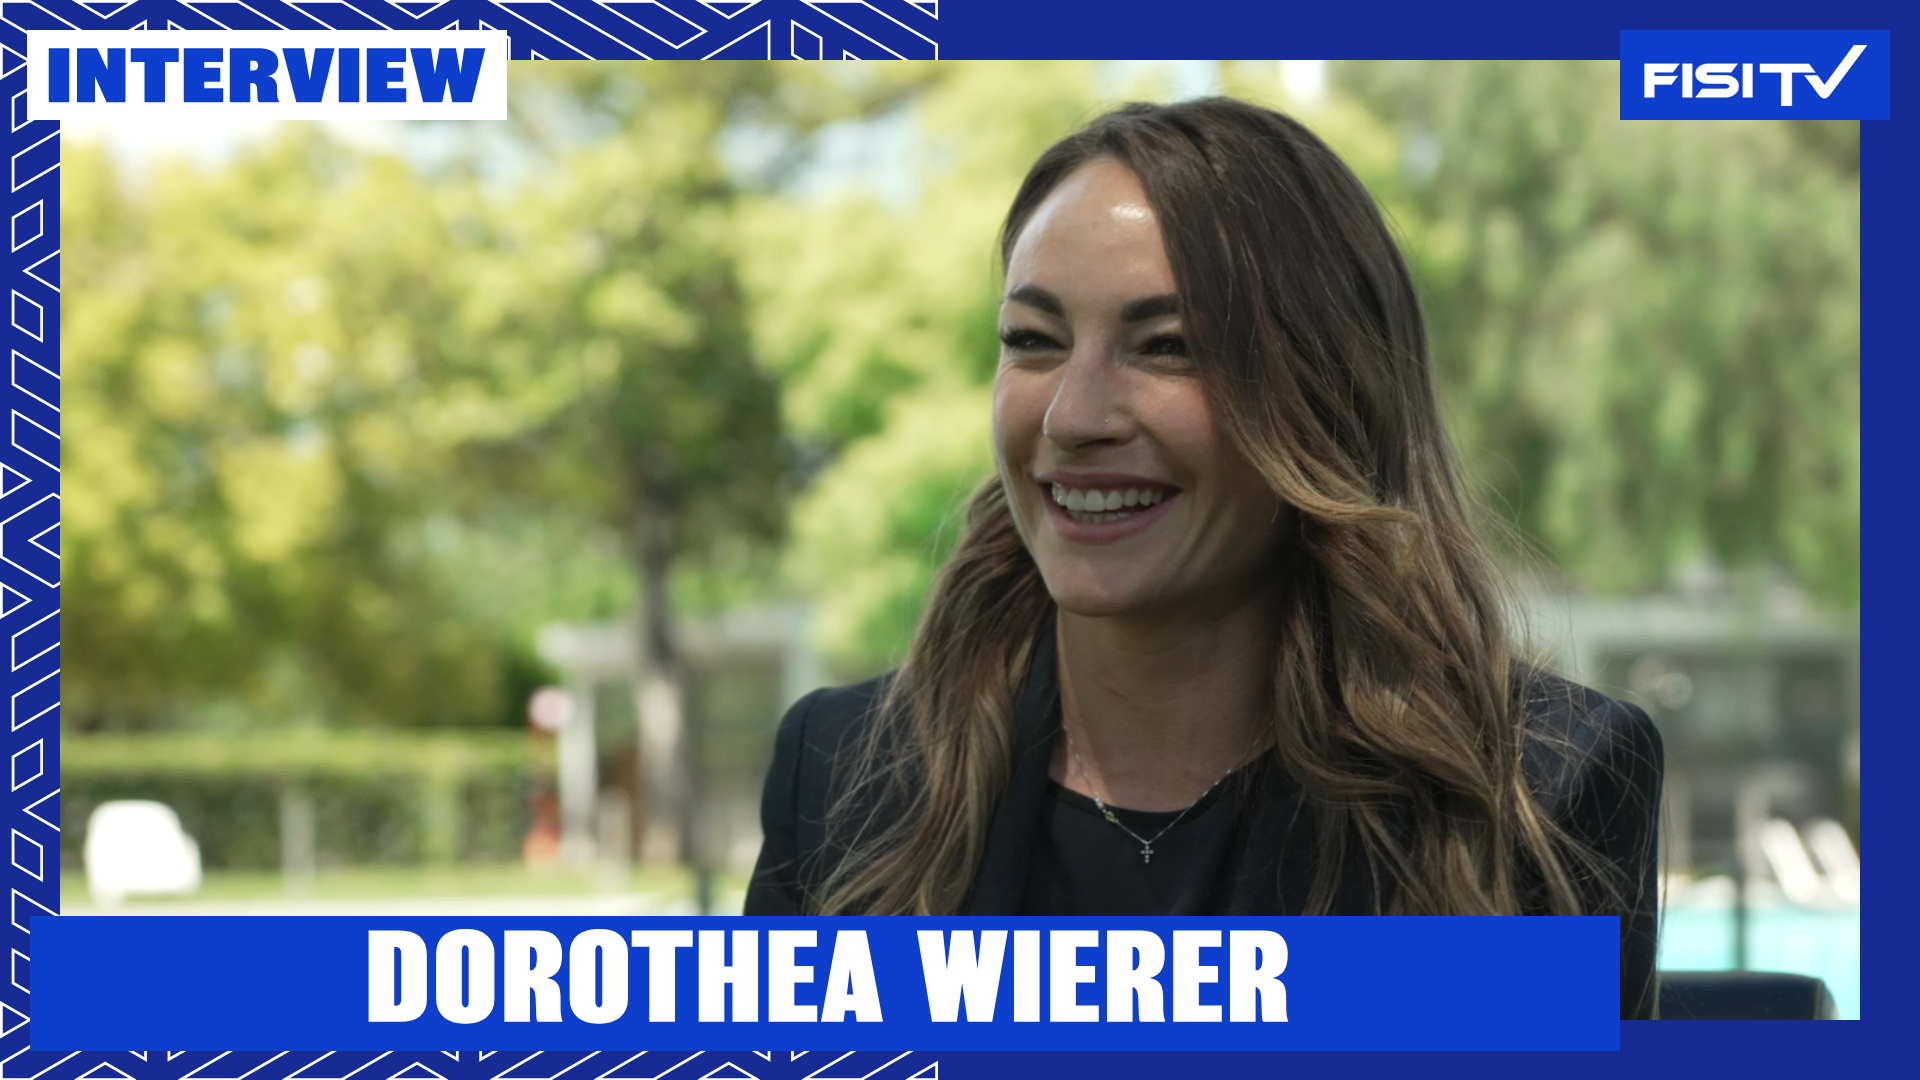 Dorothea Wierer | “Cercherò di impegnarmi al massimo, consapevole di quello che ho fatto” | FISI TV